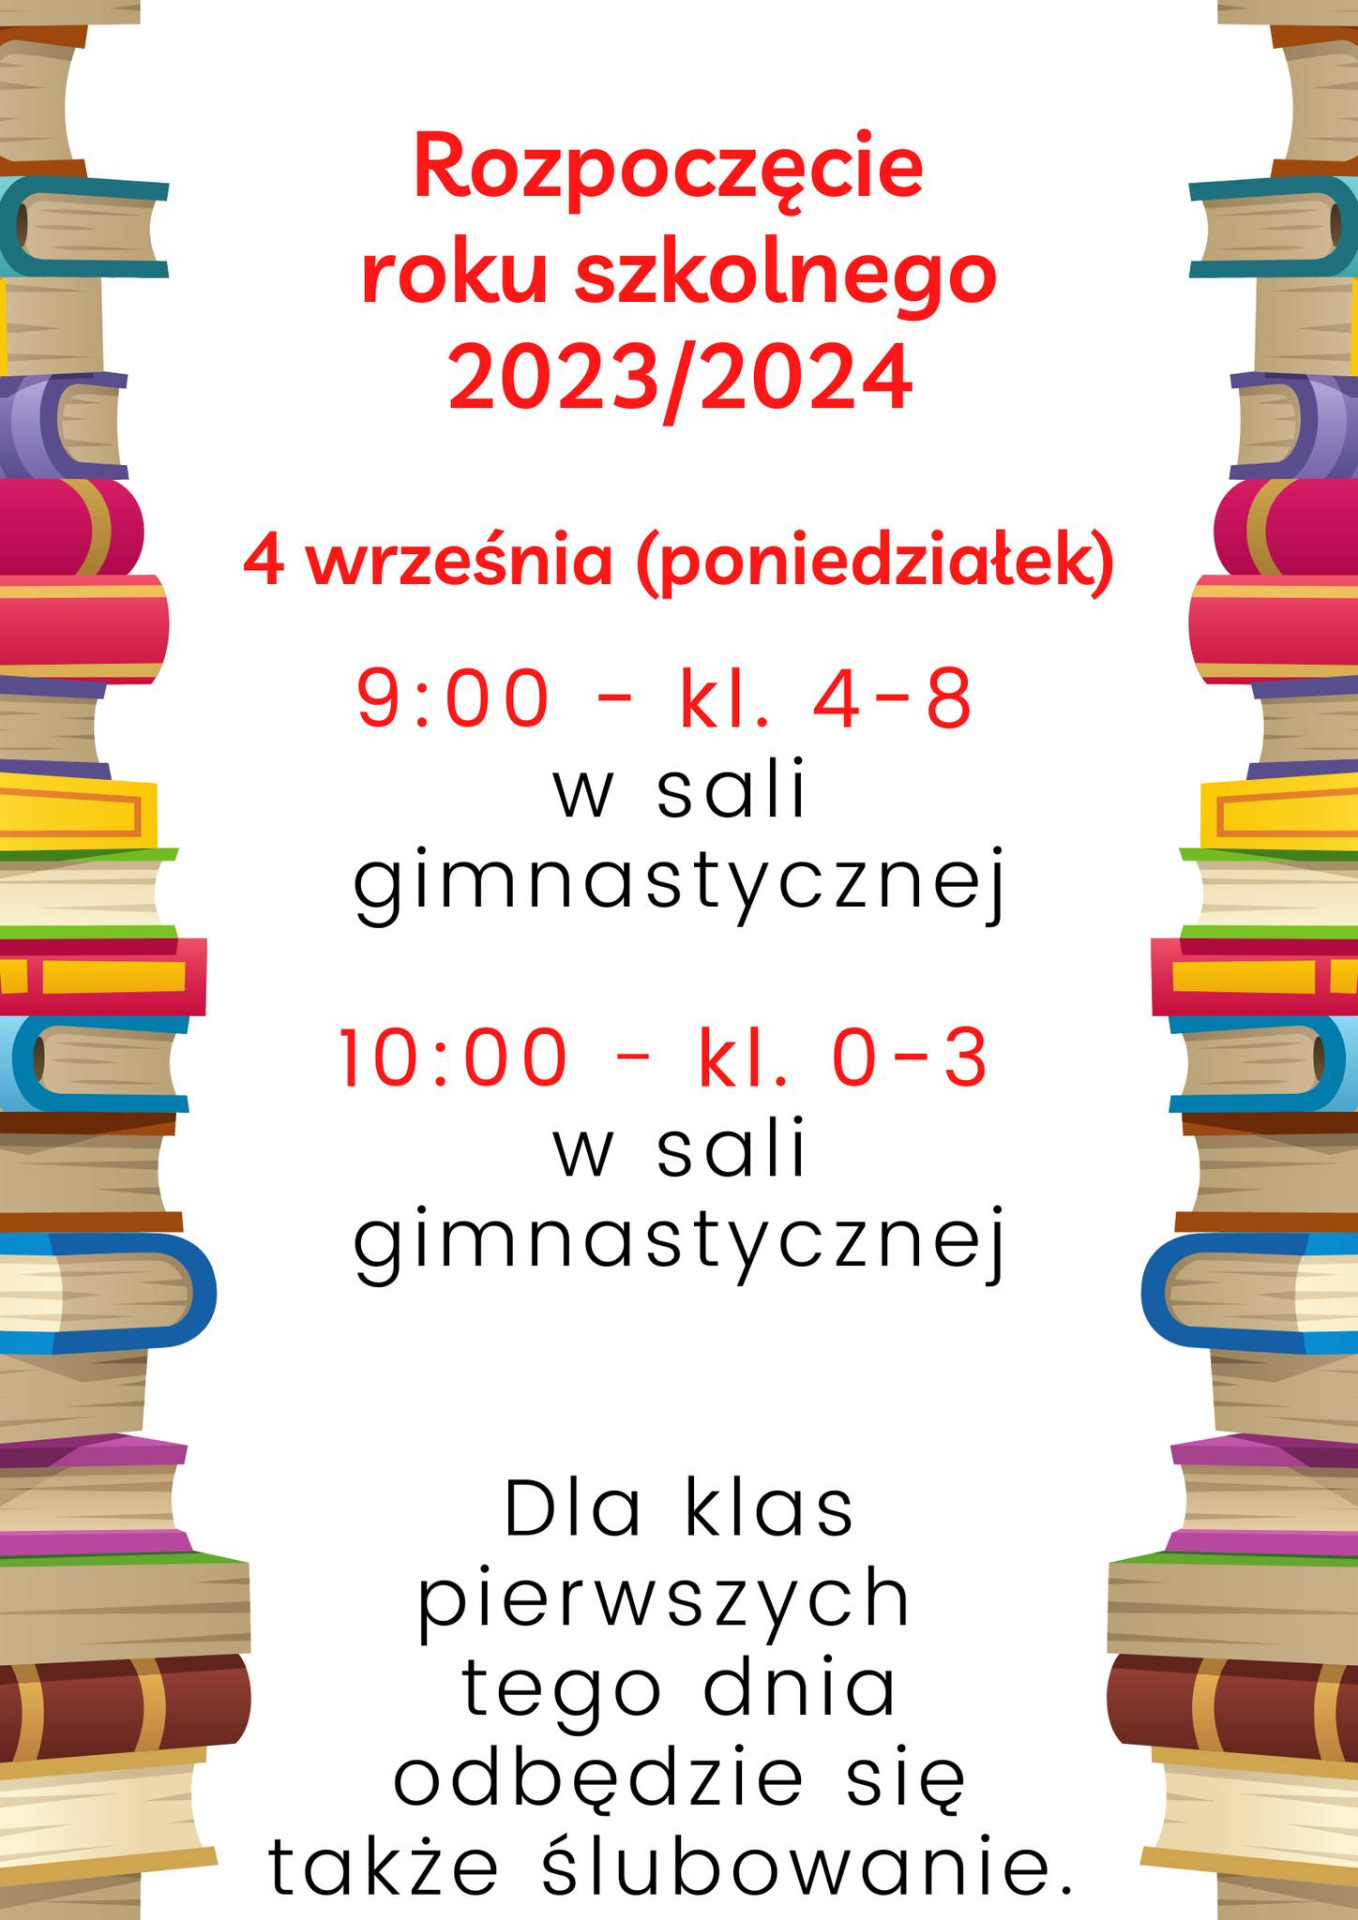 Rozpoczęcie roku szkolnego 2023/2024 - aktualizacja  - Obrazek 1